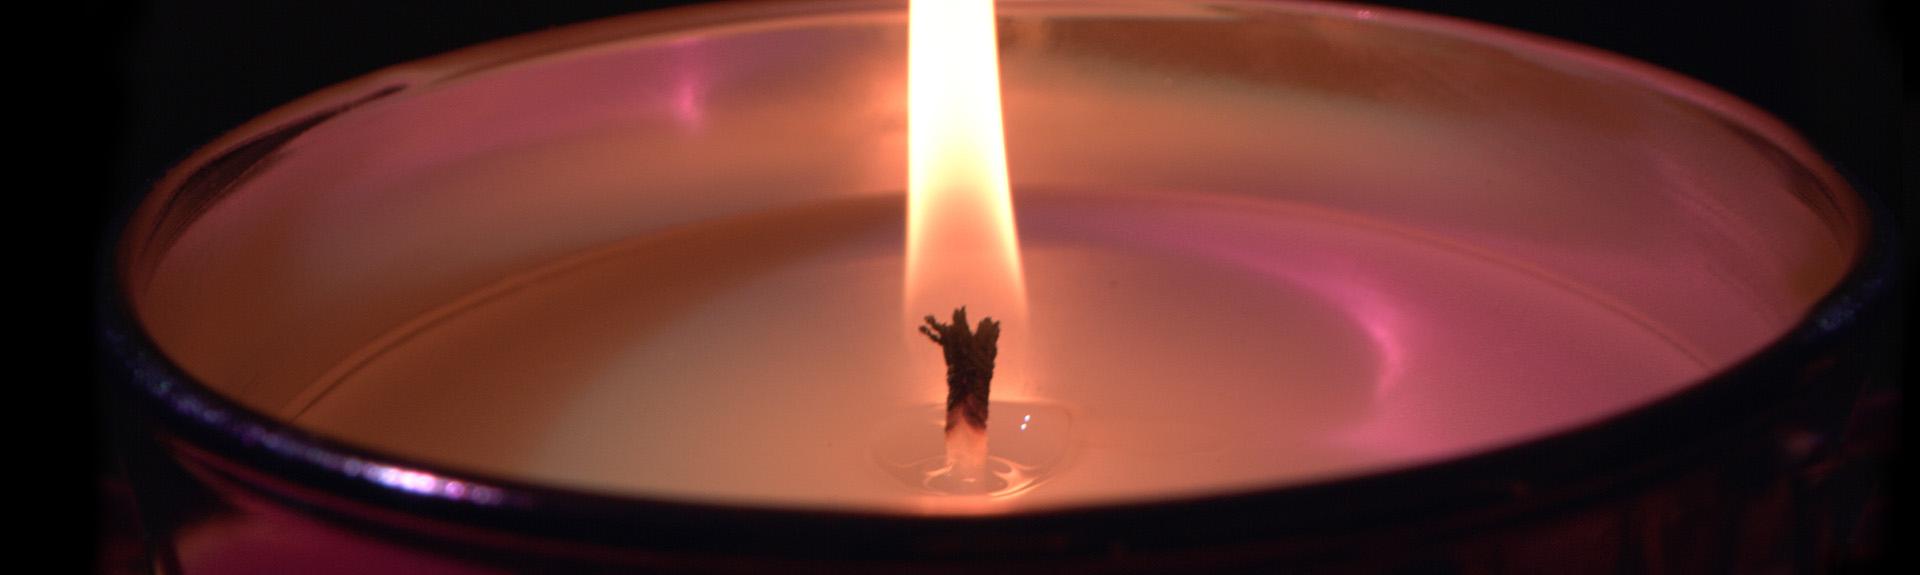 candles backgrodun